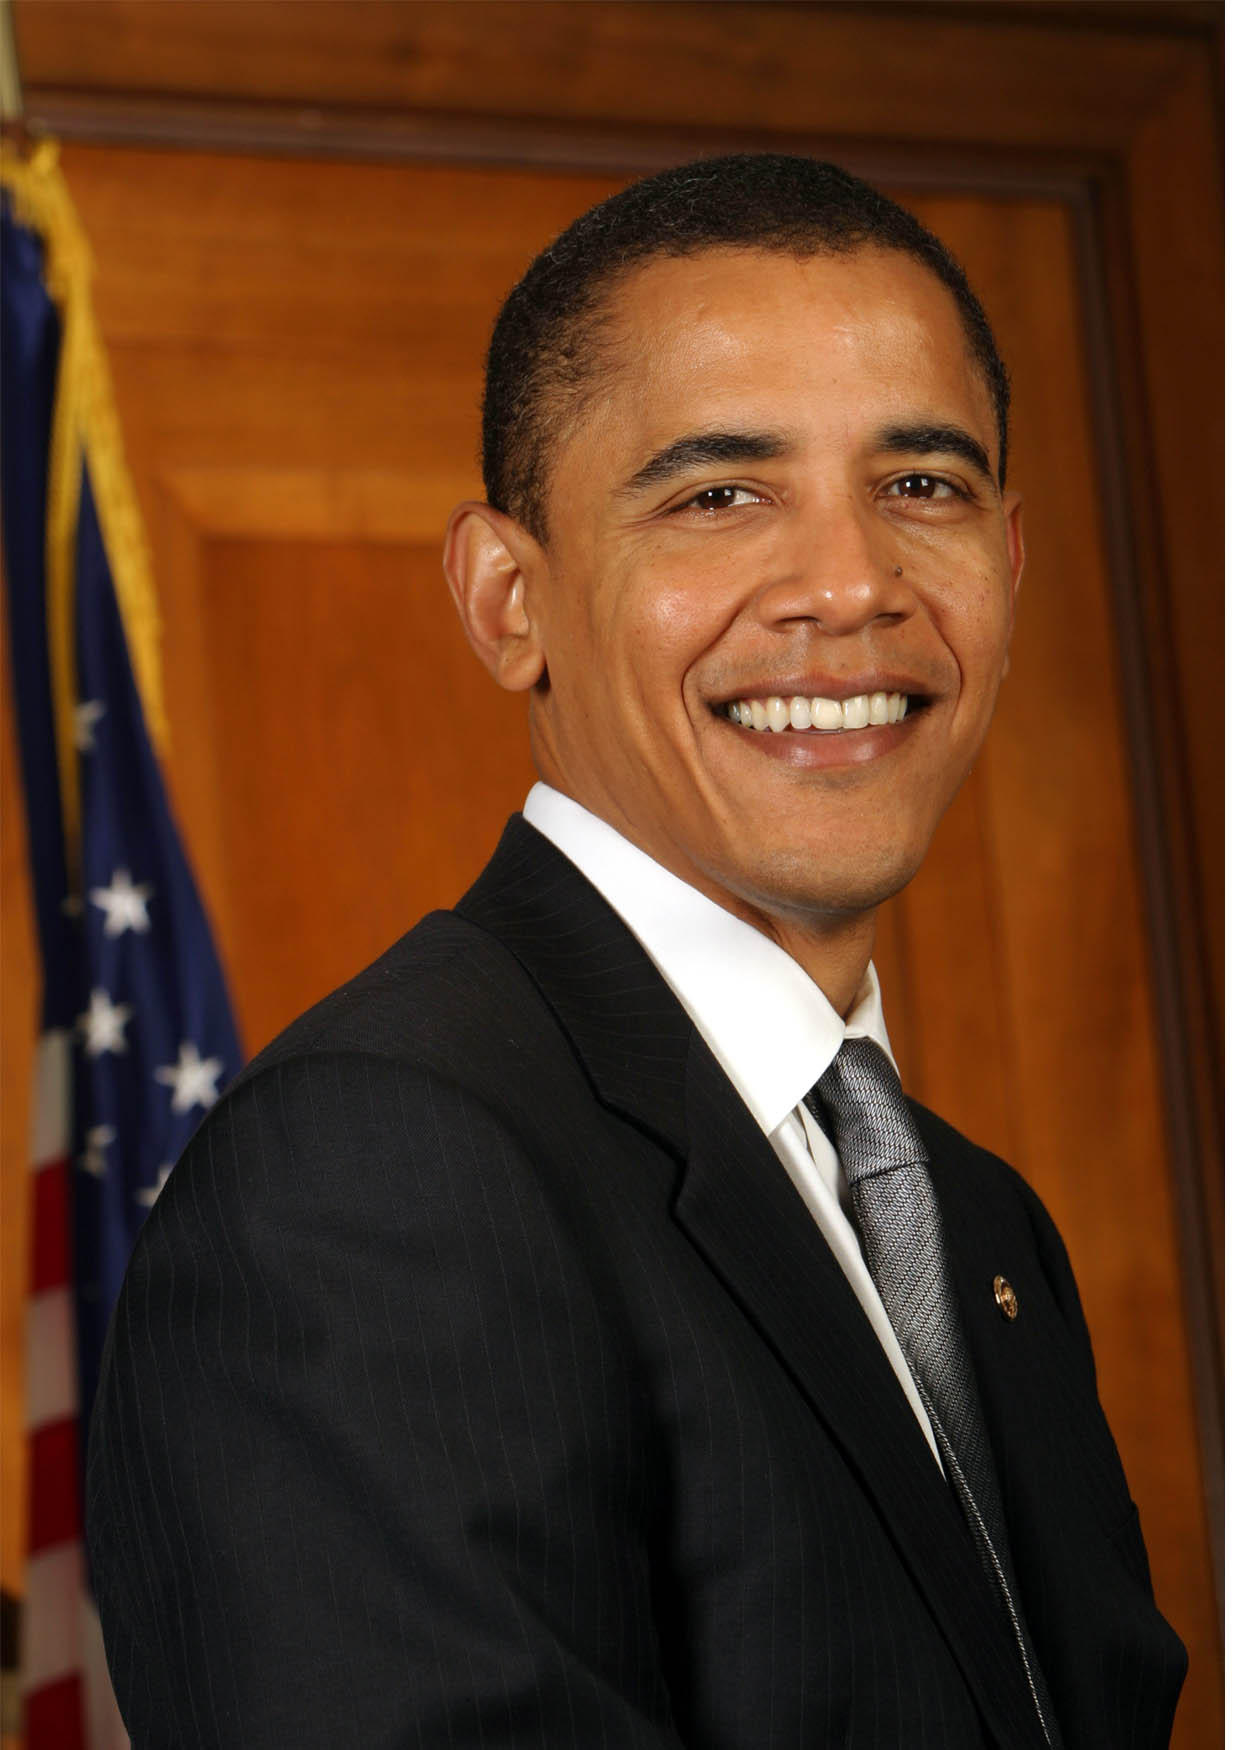 Photo President Obama